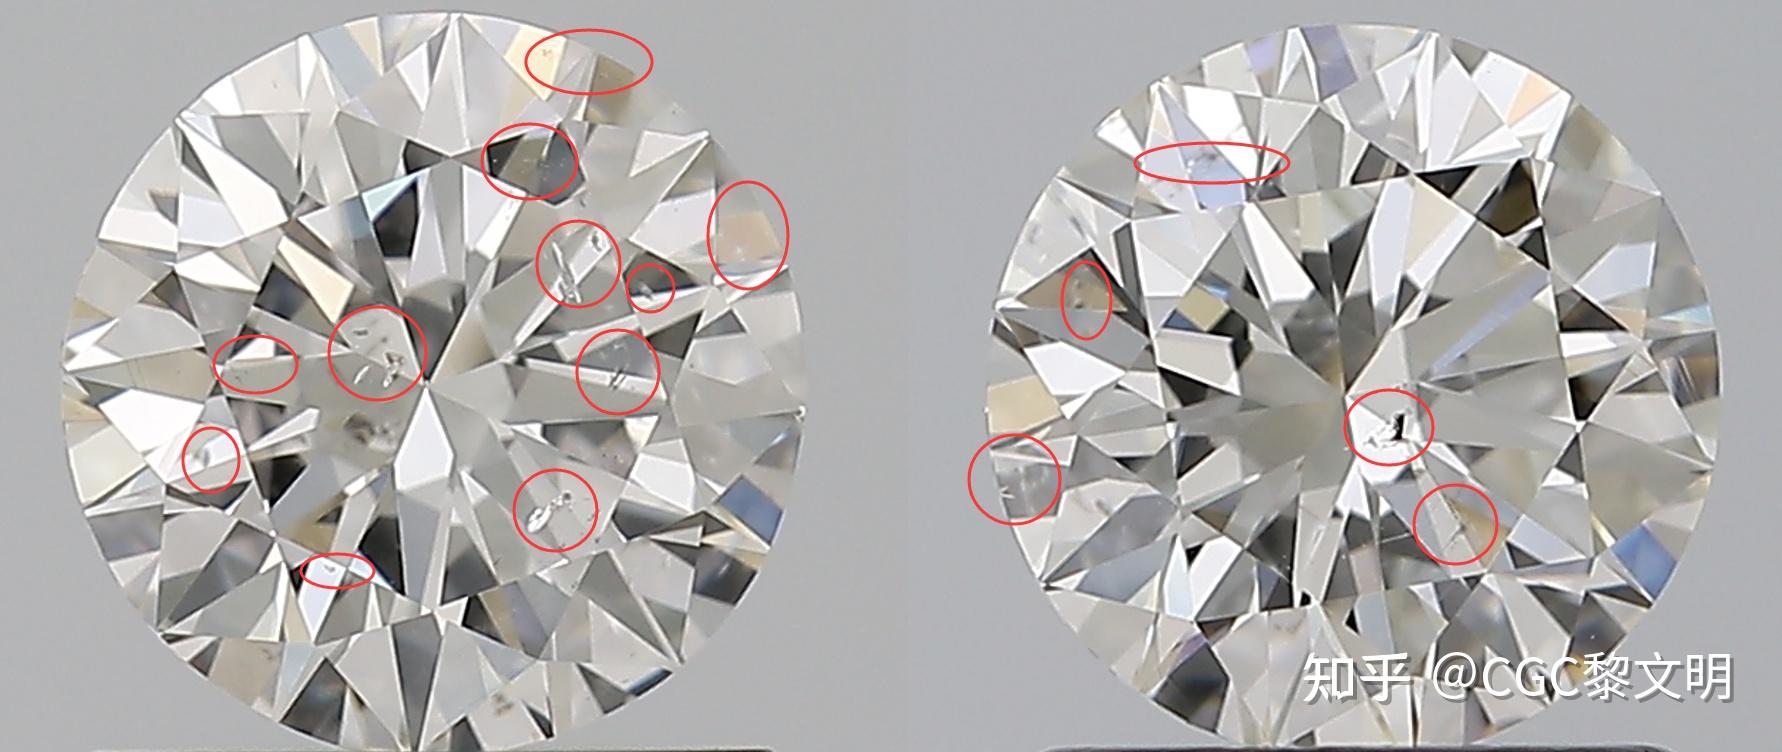 钻石内部净度特征有哪些,钻石净度分级从哪几个角度评判内含物是否影响净度级别-第1张图片-翡翠网